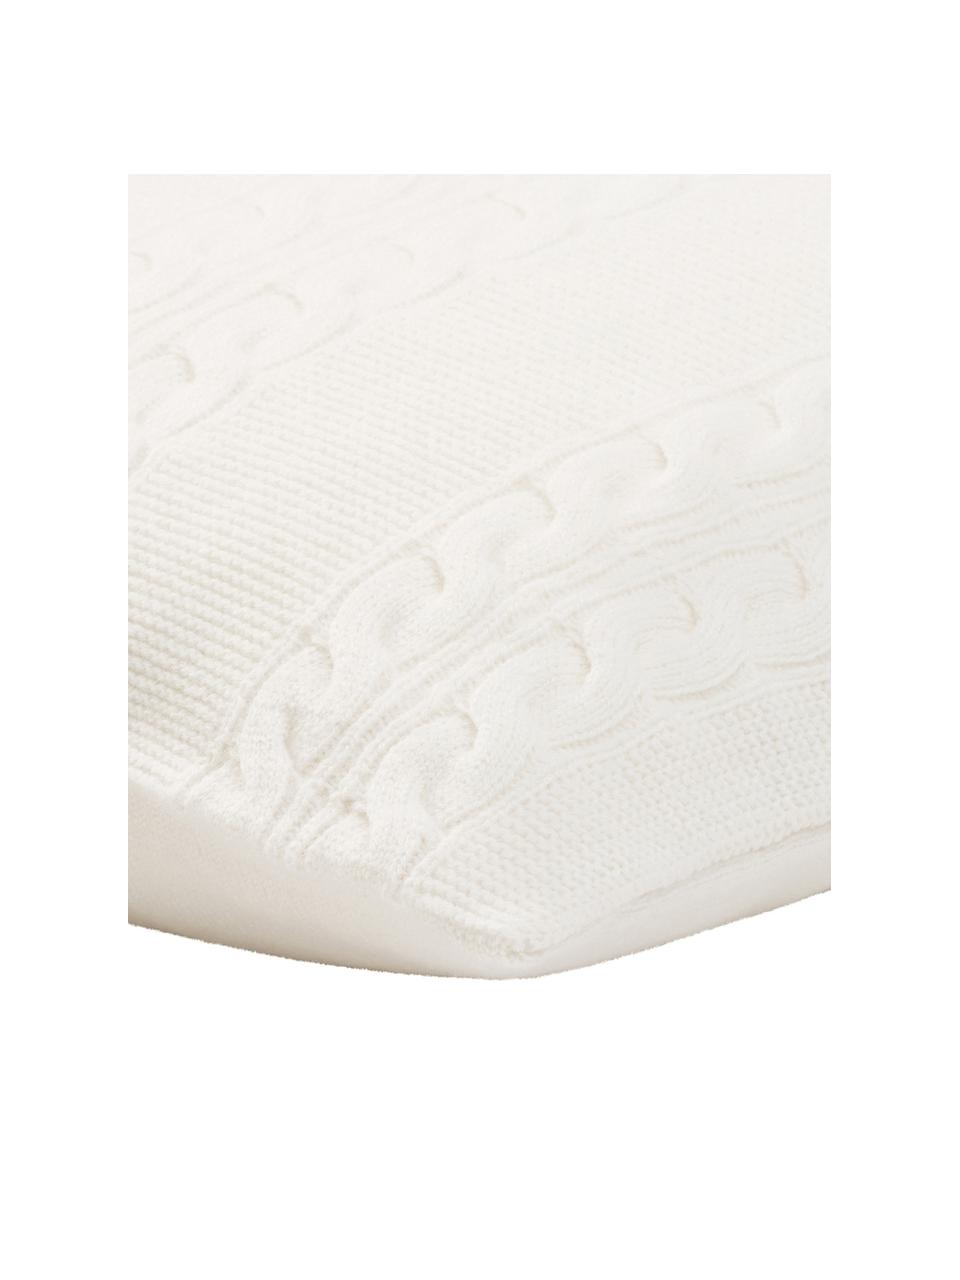 Funda de cojín de cachemira pura Leonie, 100% cachemira
La cachemira es un tejido muy suave, cómodo y cálido, Blanco crema, An 40 x L 40 cm